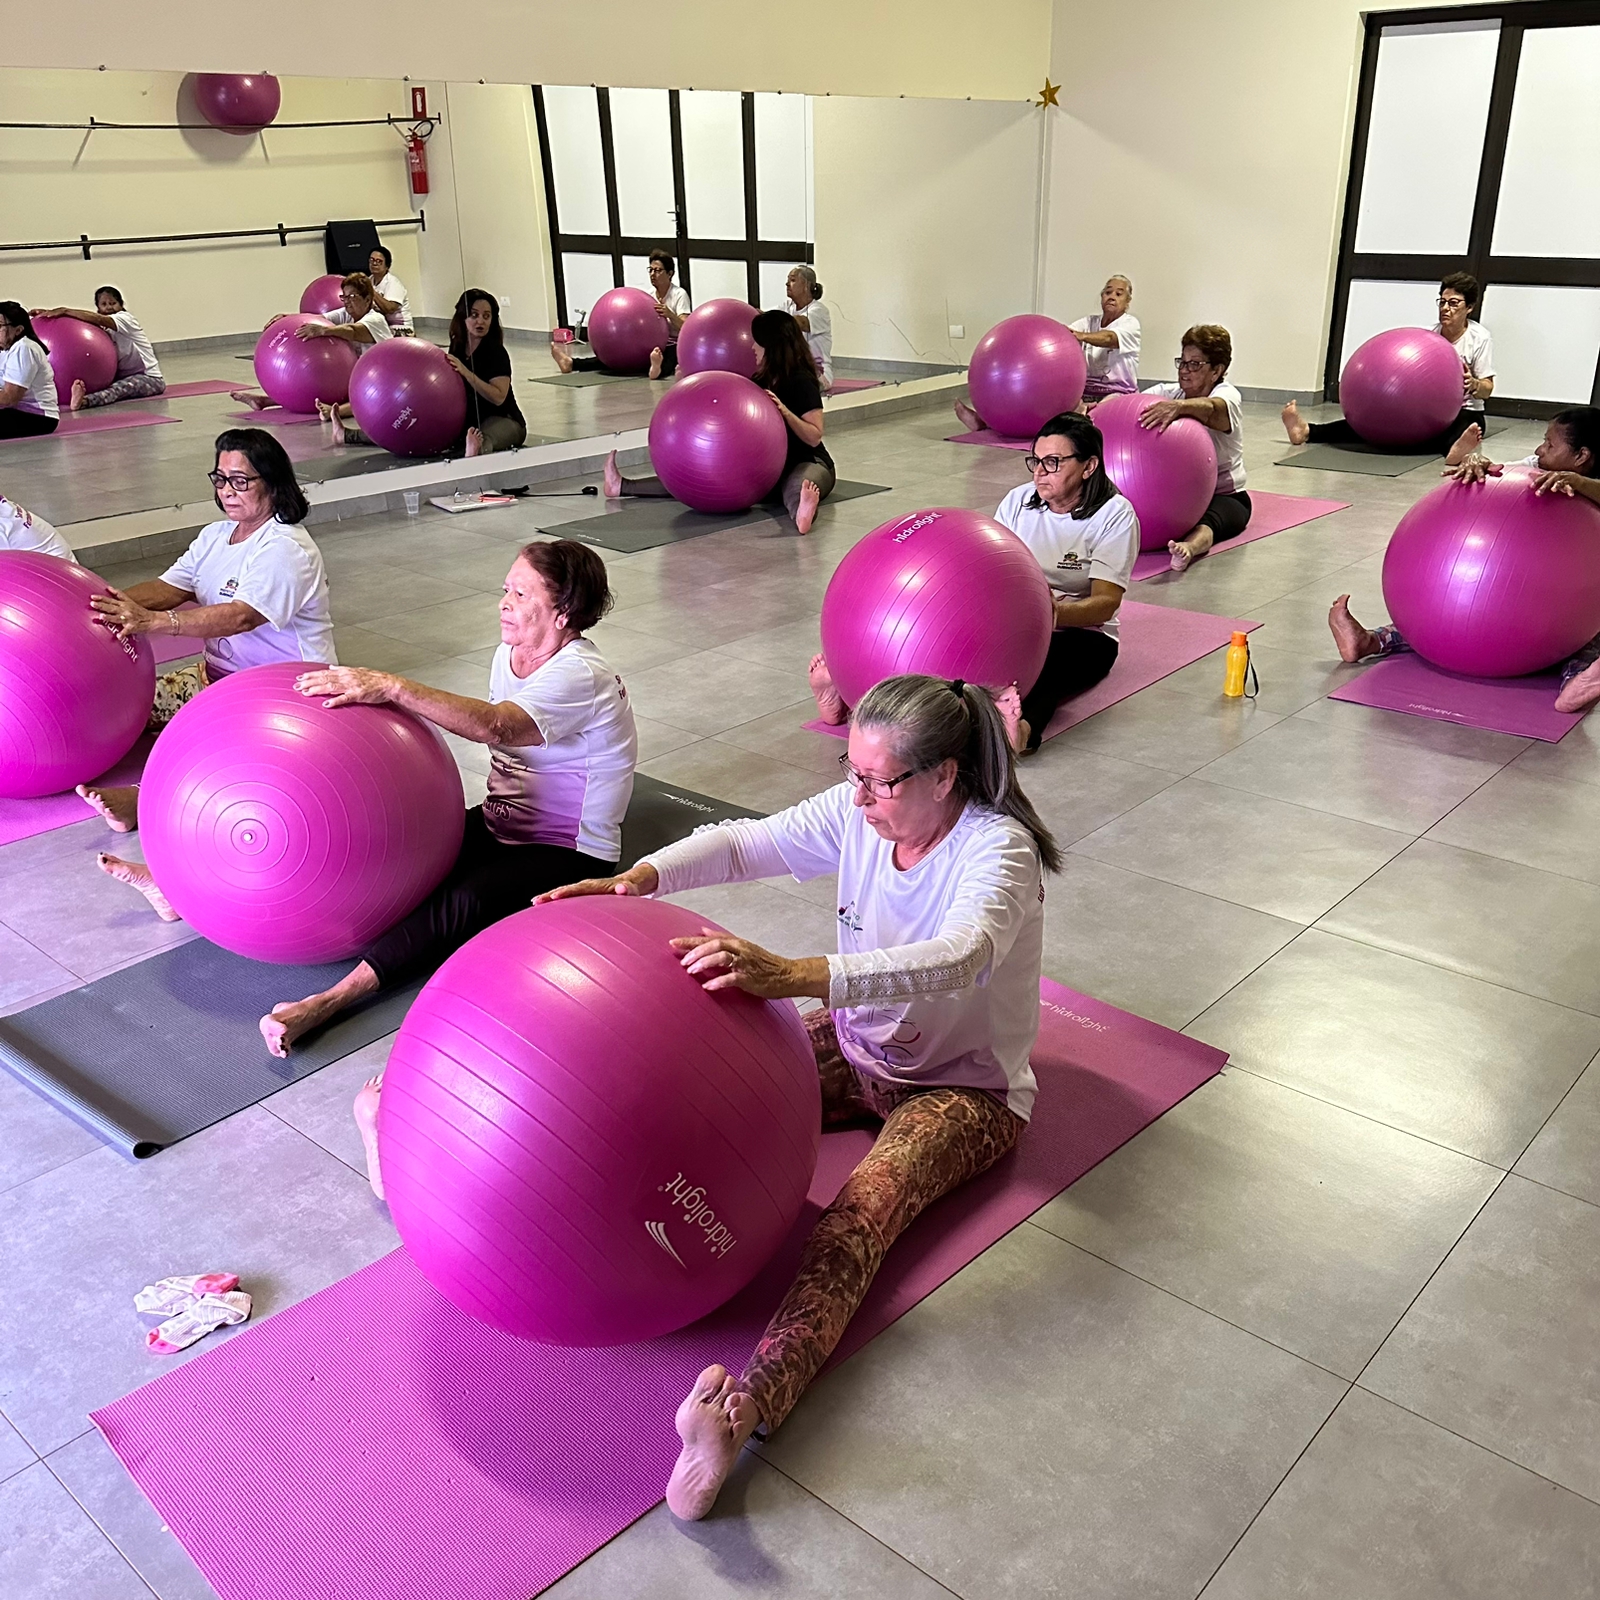 Aulas de Pilates ajuda a melhorar a saúde física e mental das